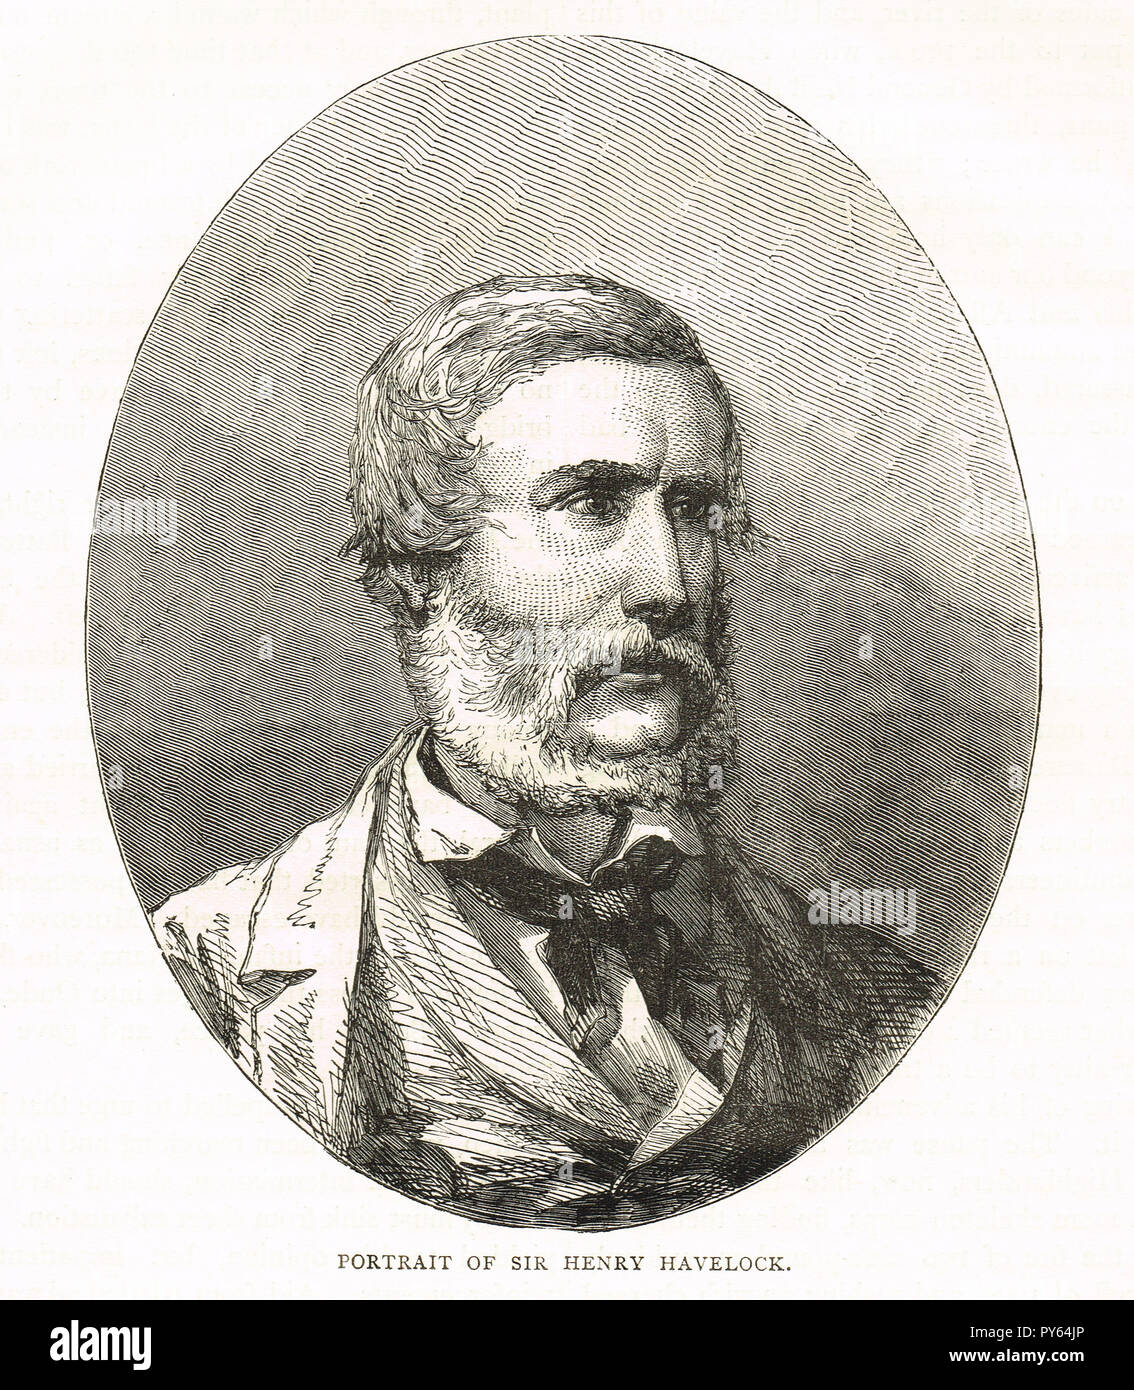 Le Major-général Sir Henry Havelock. Le général britannique, en particulier associé à l'Inde, repris Cawnpore durant la Rébellion indienne de 1857 Banque D'Images